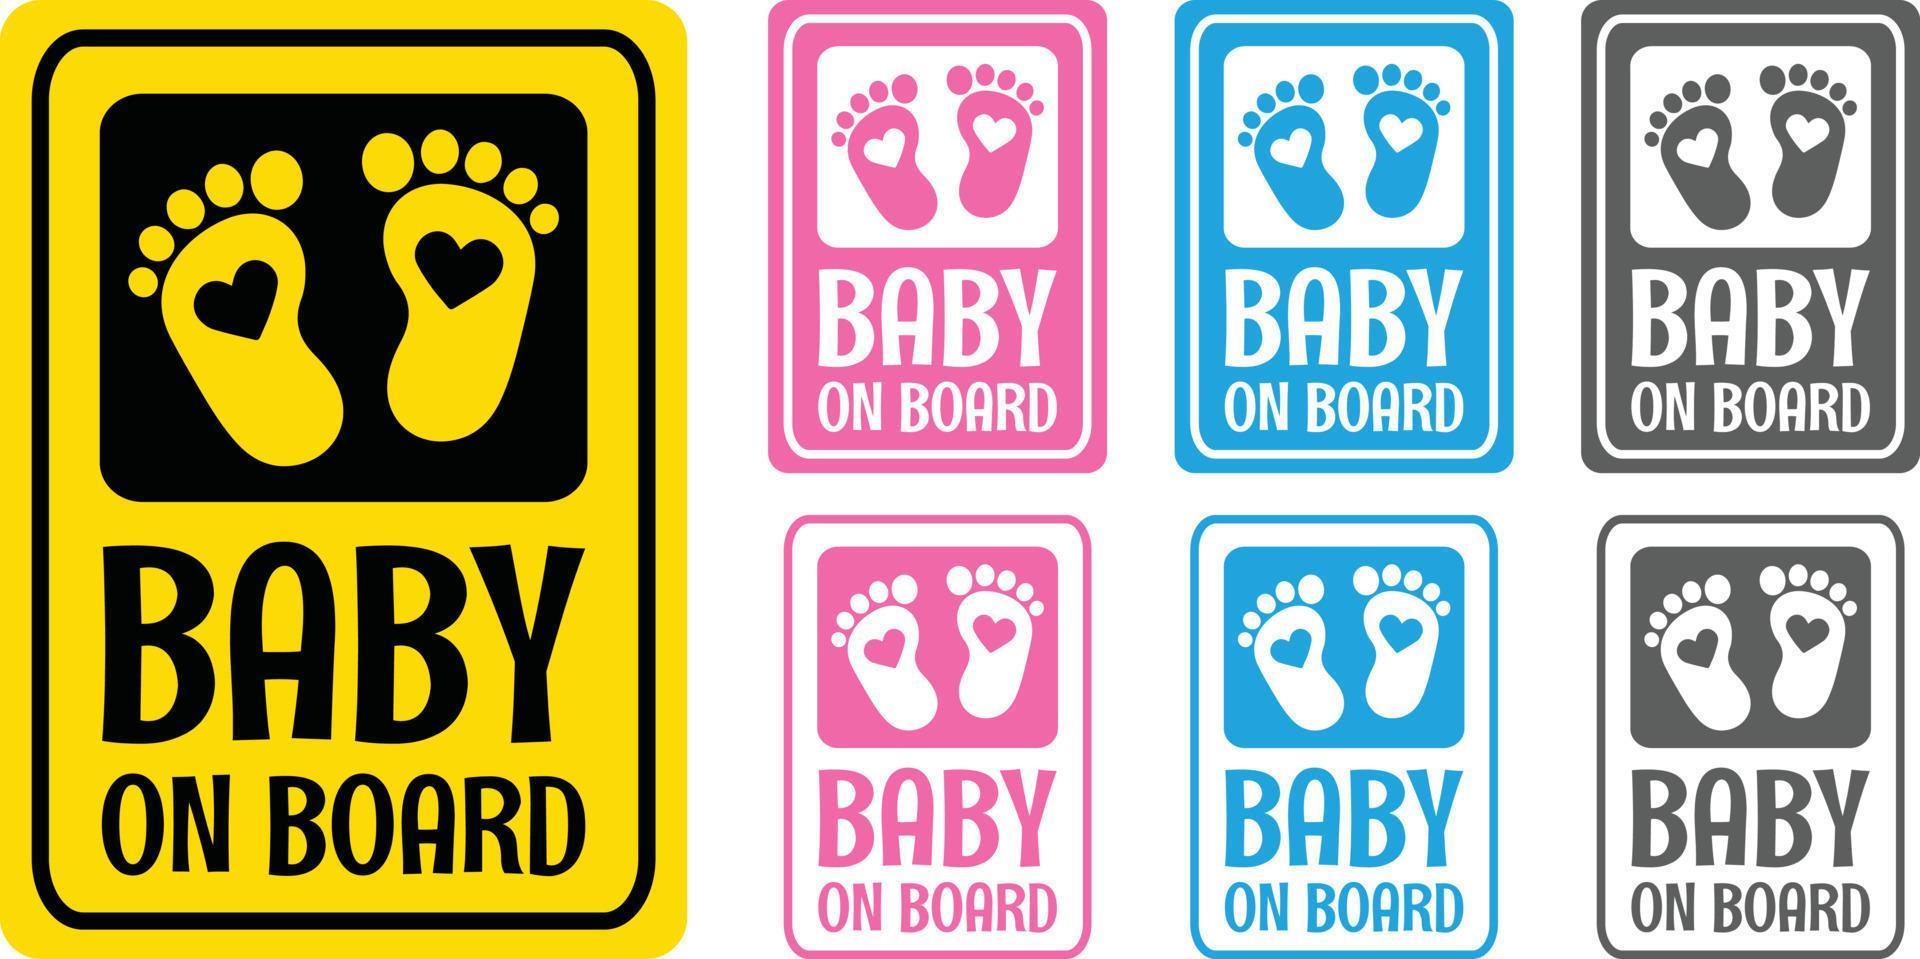 baby Aan bord leuze met 7 verschillend kleur variaties. vrouw of moeder is zwanger. vlak vector baby citaat. hart teken in de midden- van de baby voetafdruk.